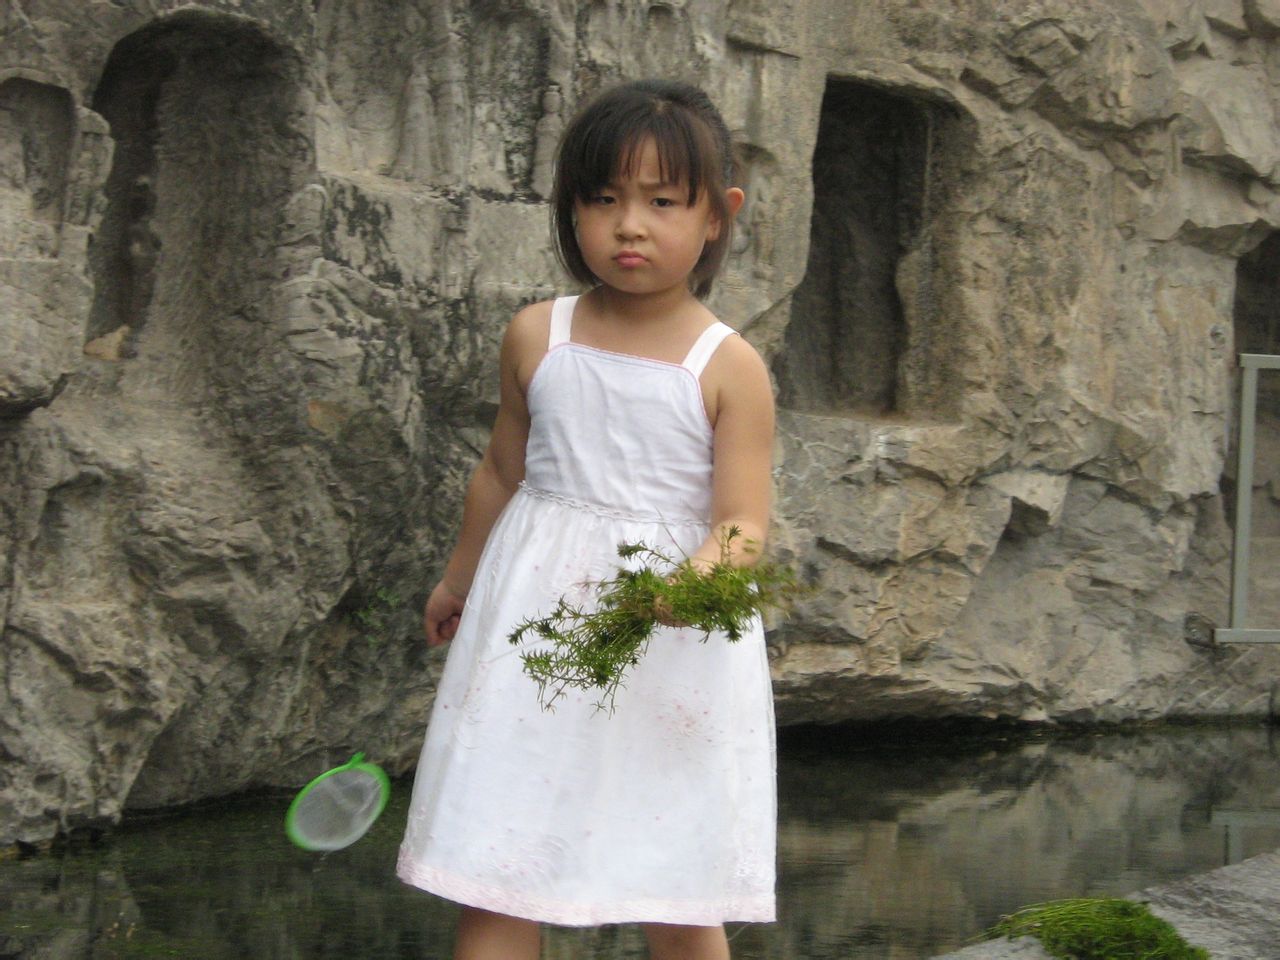 胡德桂拍攝的龍門石窟撈水草的女孩